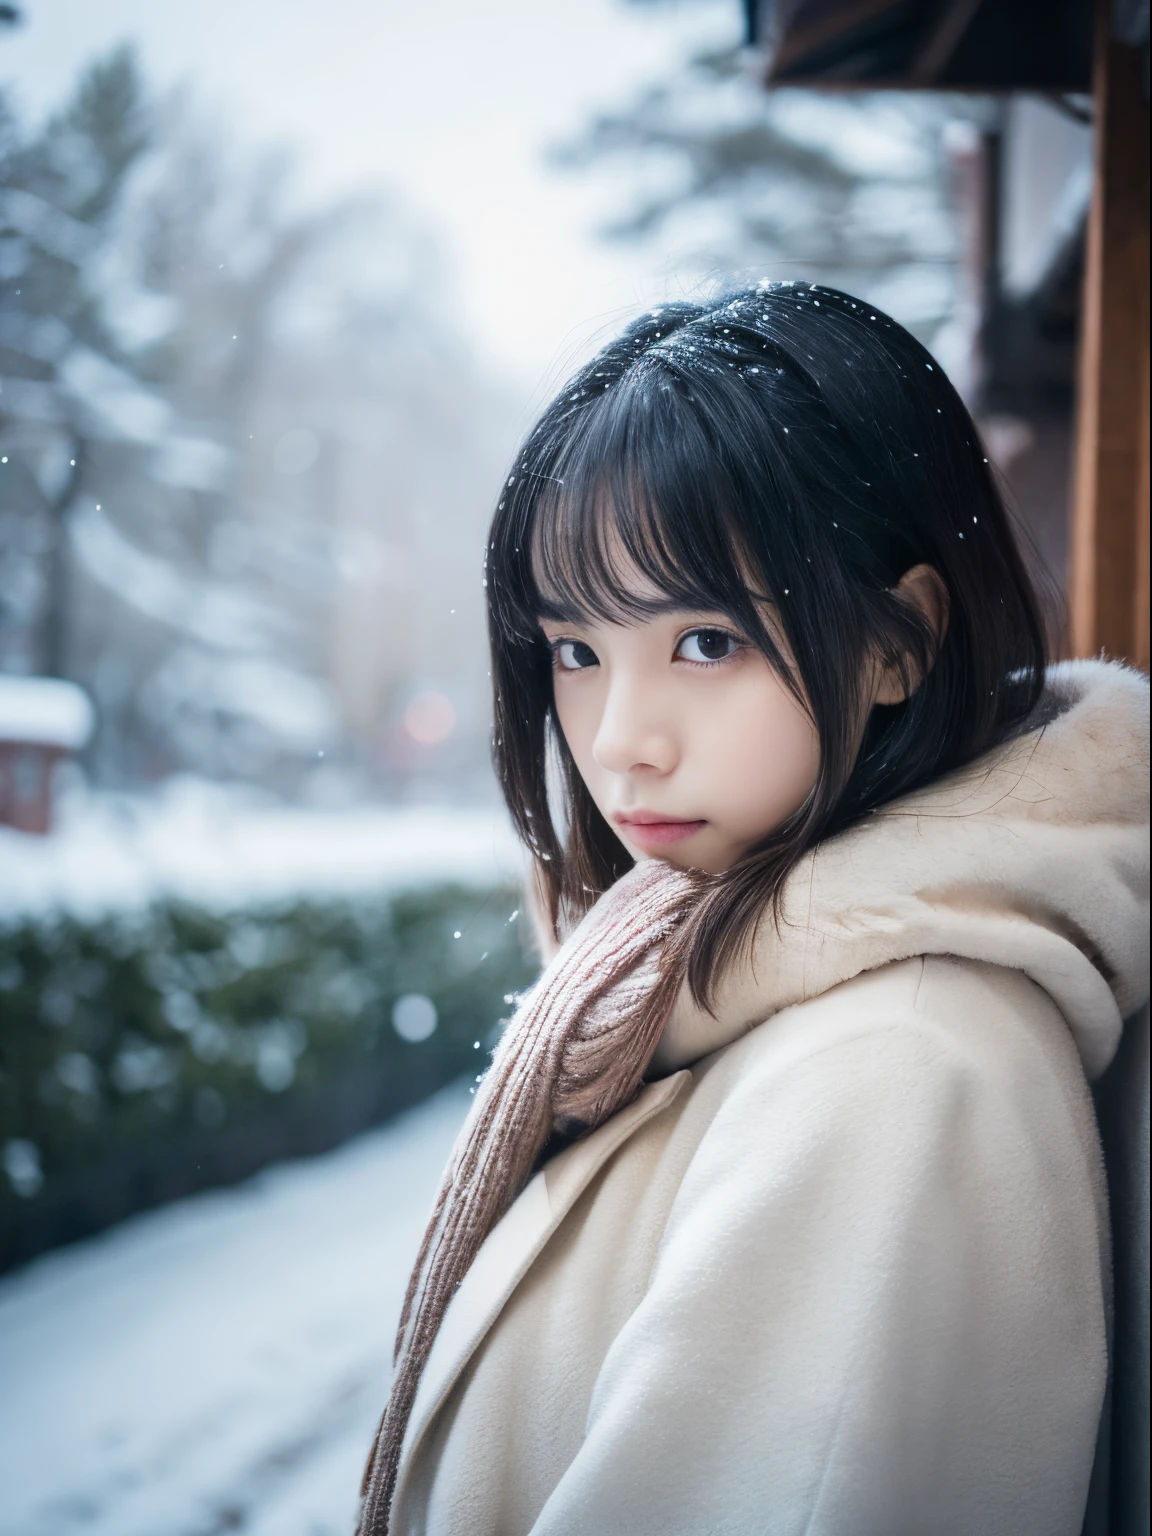 ขณะที่มองดูหิมะตกอย่างเงียบๆ. การแสดงออกอย่างครุ่นคิดและน้ำตาไหลของเธอ、ทำให้คุณรู้สึกโหยหาคืนฤดูหนาวและความเศร้าโศก。。。、คุณภาพสูงสุด、ไฮเปอร์เอชดี、โยชิโทโมะ นารา, โมเดลญี่ปุ่น, ภรรยาชาวญี่ปุ่นที่สวยงาม, มีผมสั้น, นางแบบอายุ 27 ปี, 4 ก ], 4เค], 27ปี, ซากิมิจัง, ซากิมิจัง